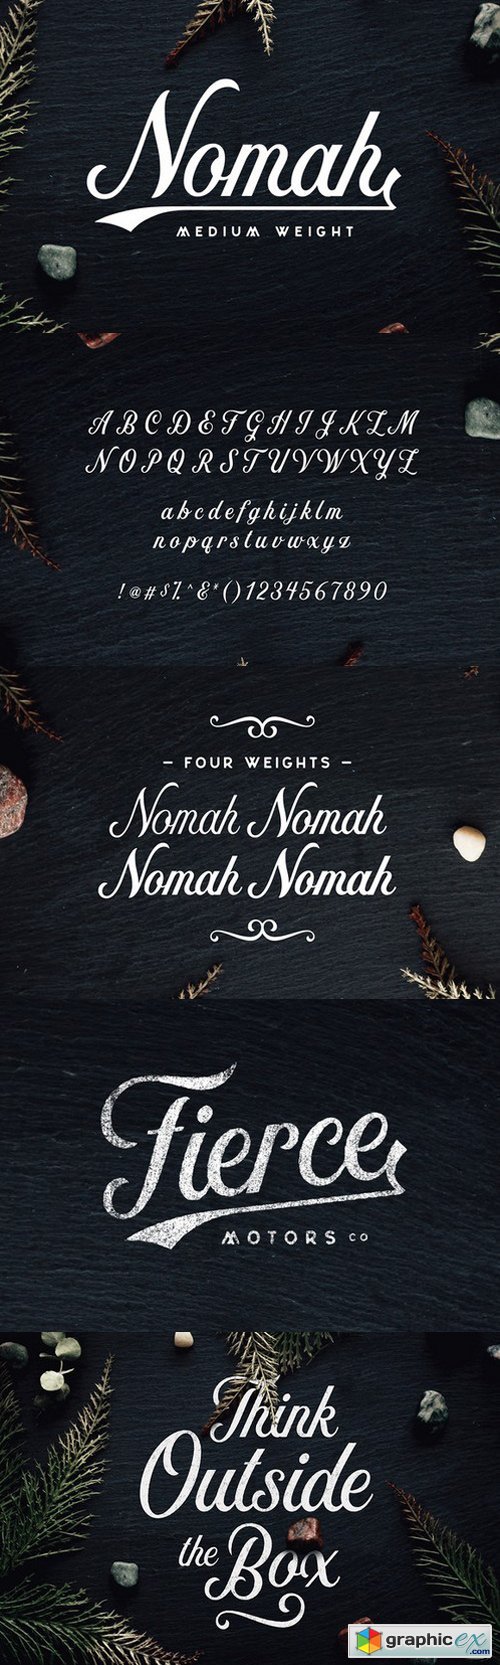 Nomah Medium Script Font